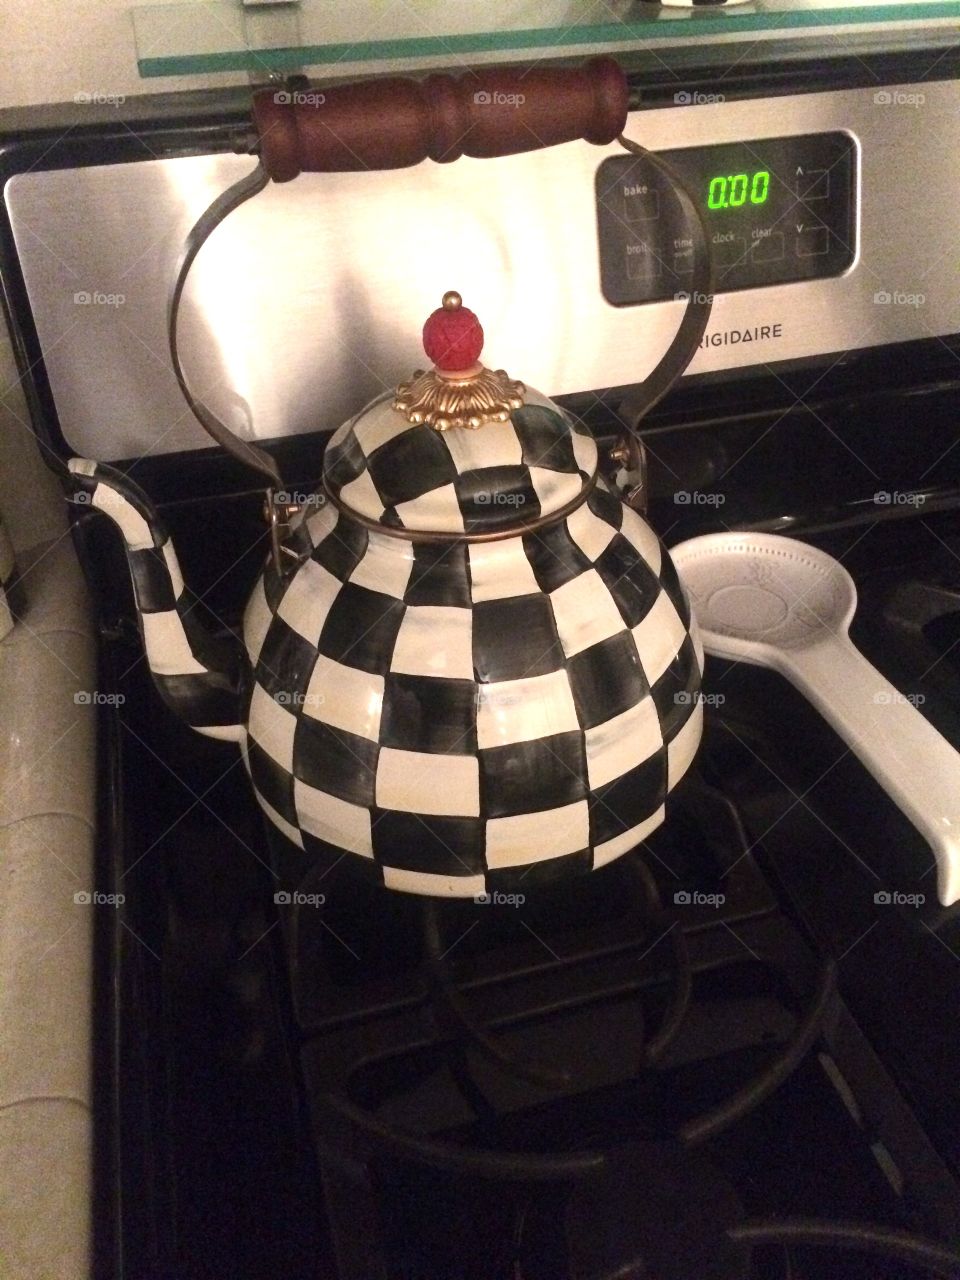 Stylish kettle